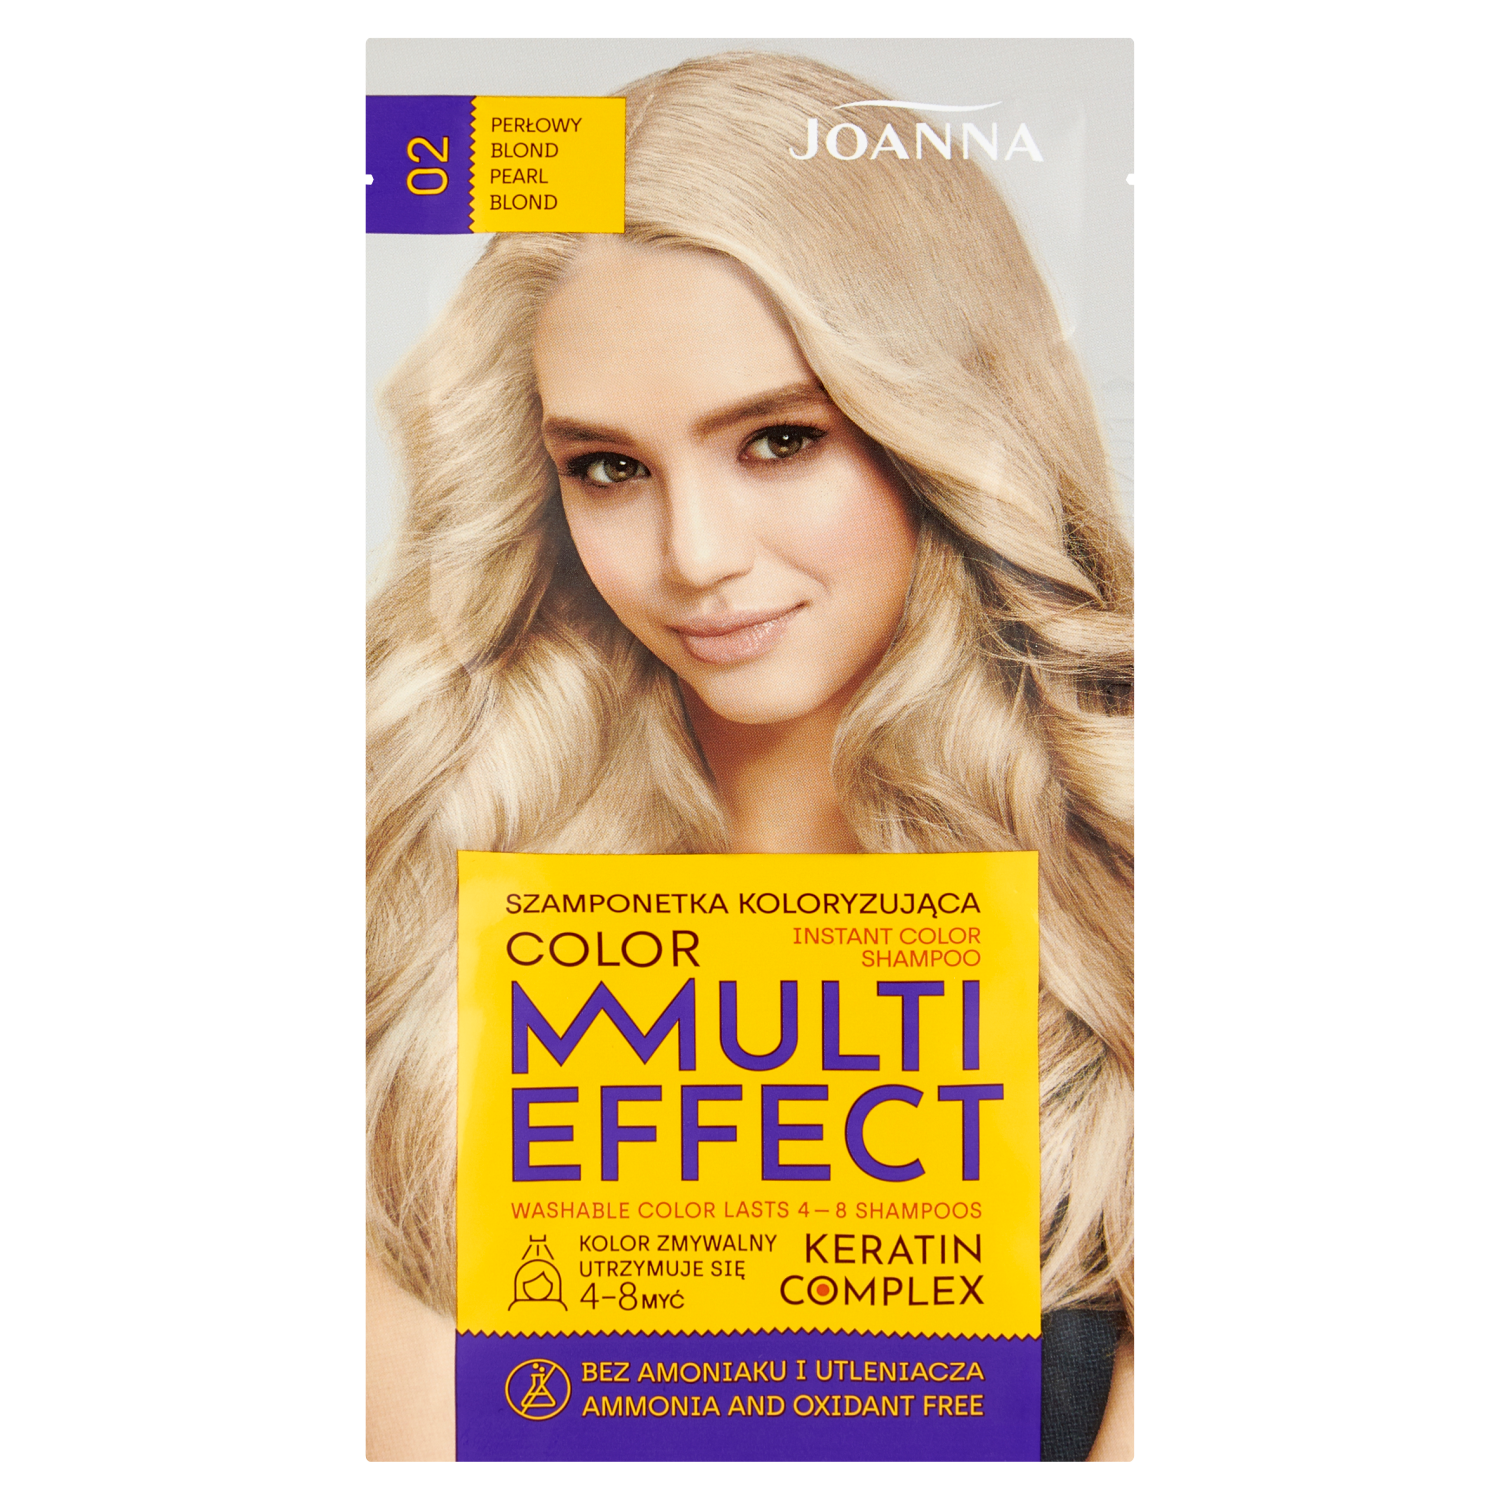 Joanna Multi Effect szamponetka koloryzująca 02 perłowy blond, 40 ml |  hebe.pl